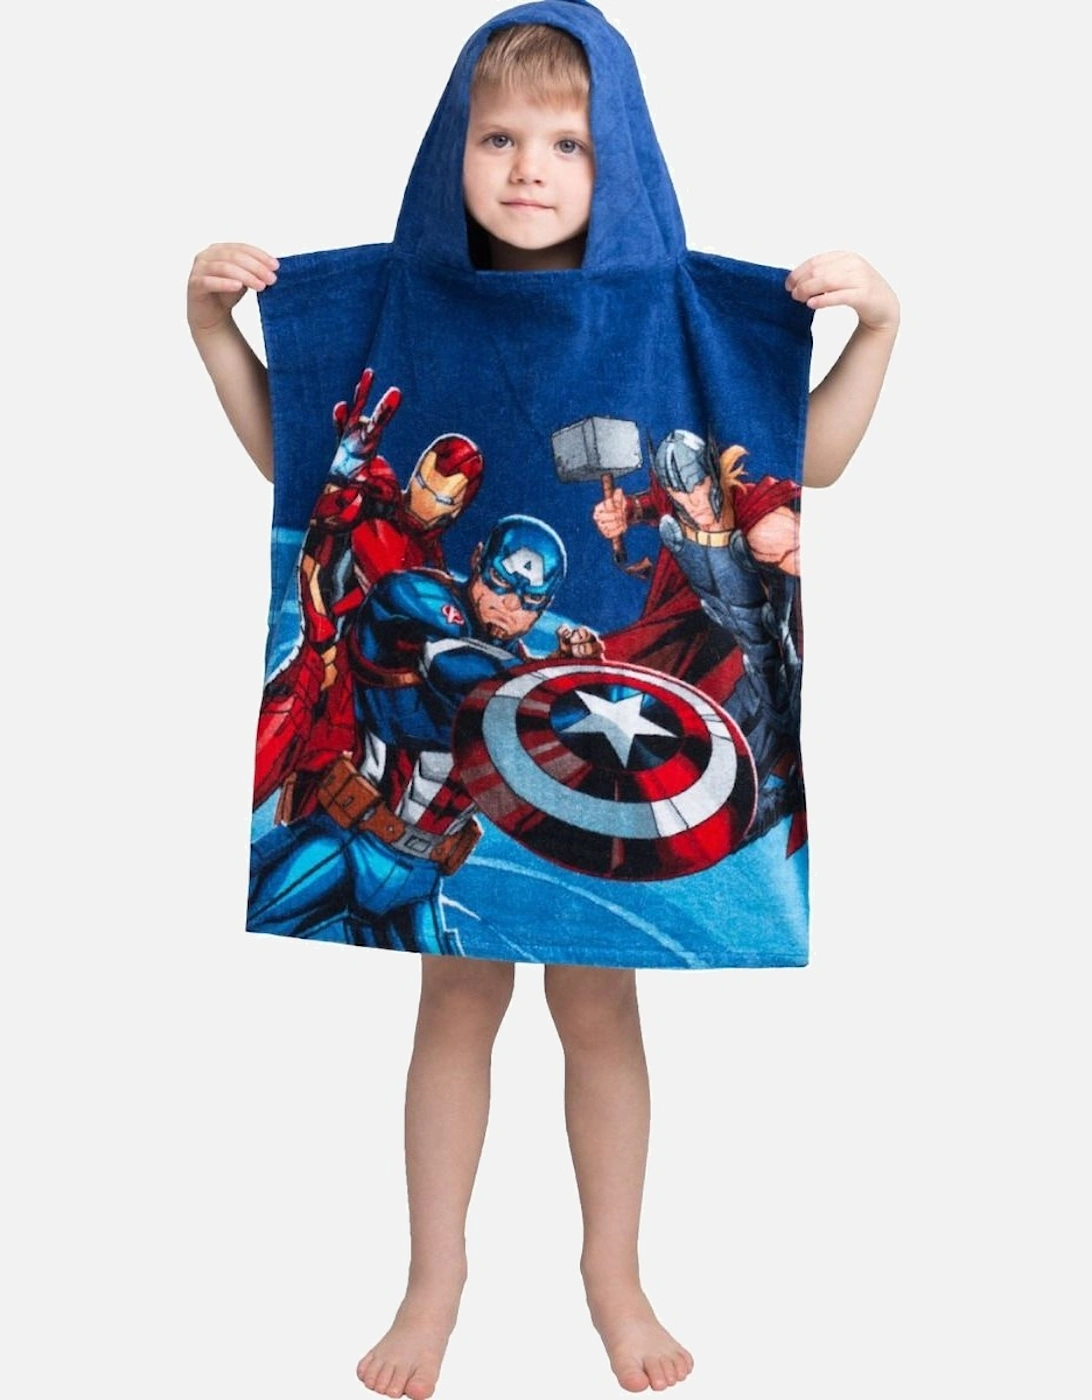 Avenger Childrens/Kids Superhero Hooded Towel, 3 of 2